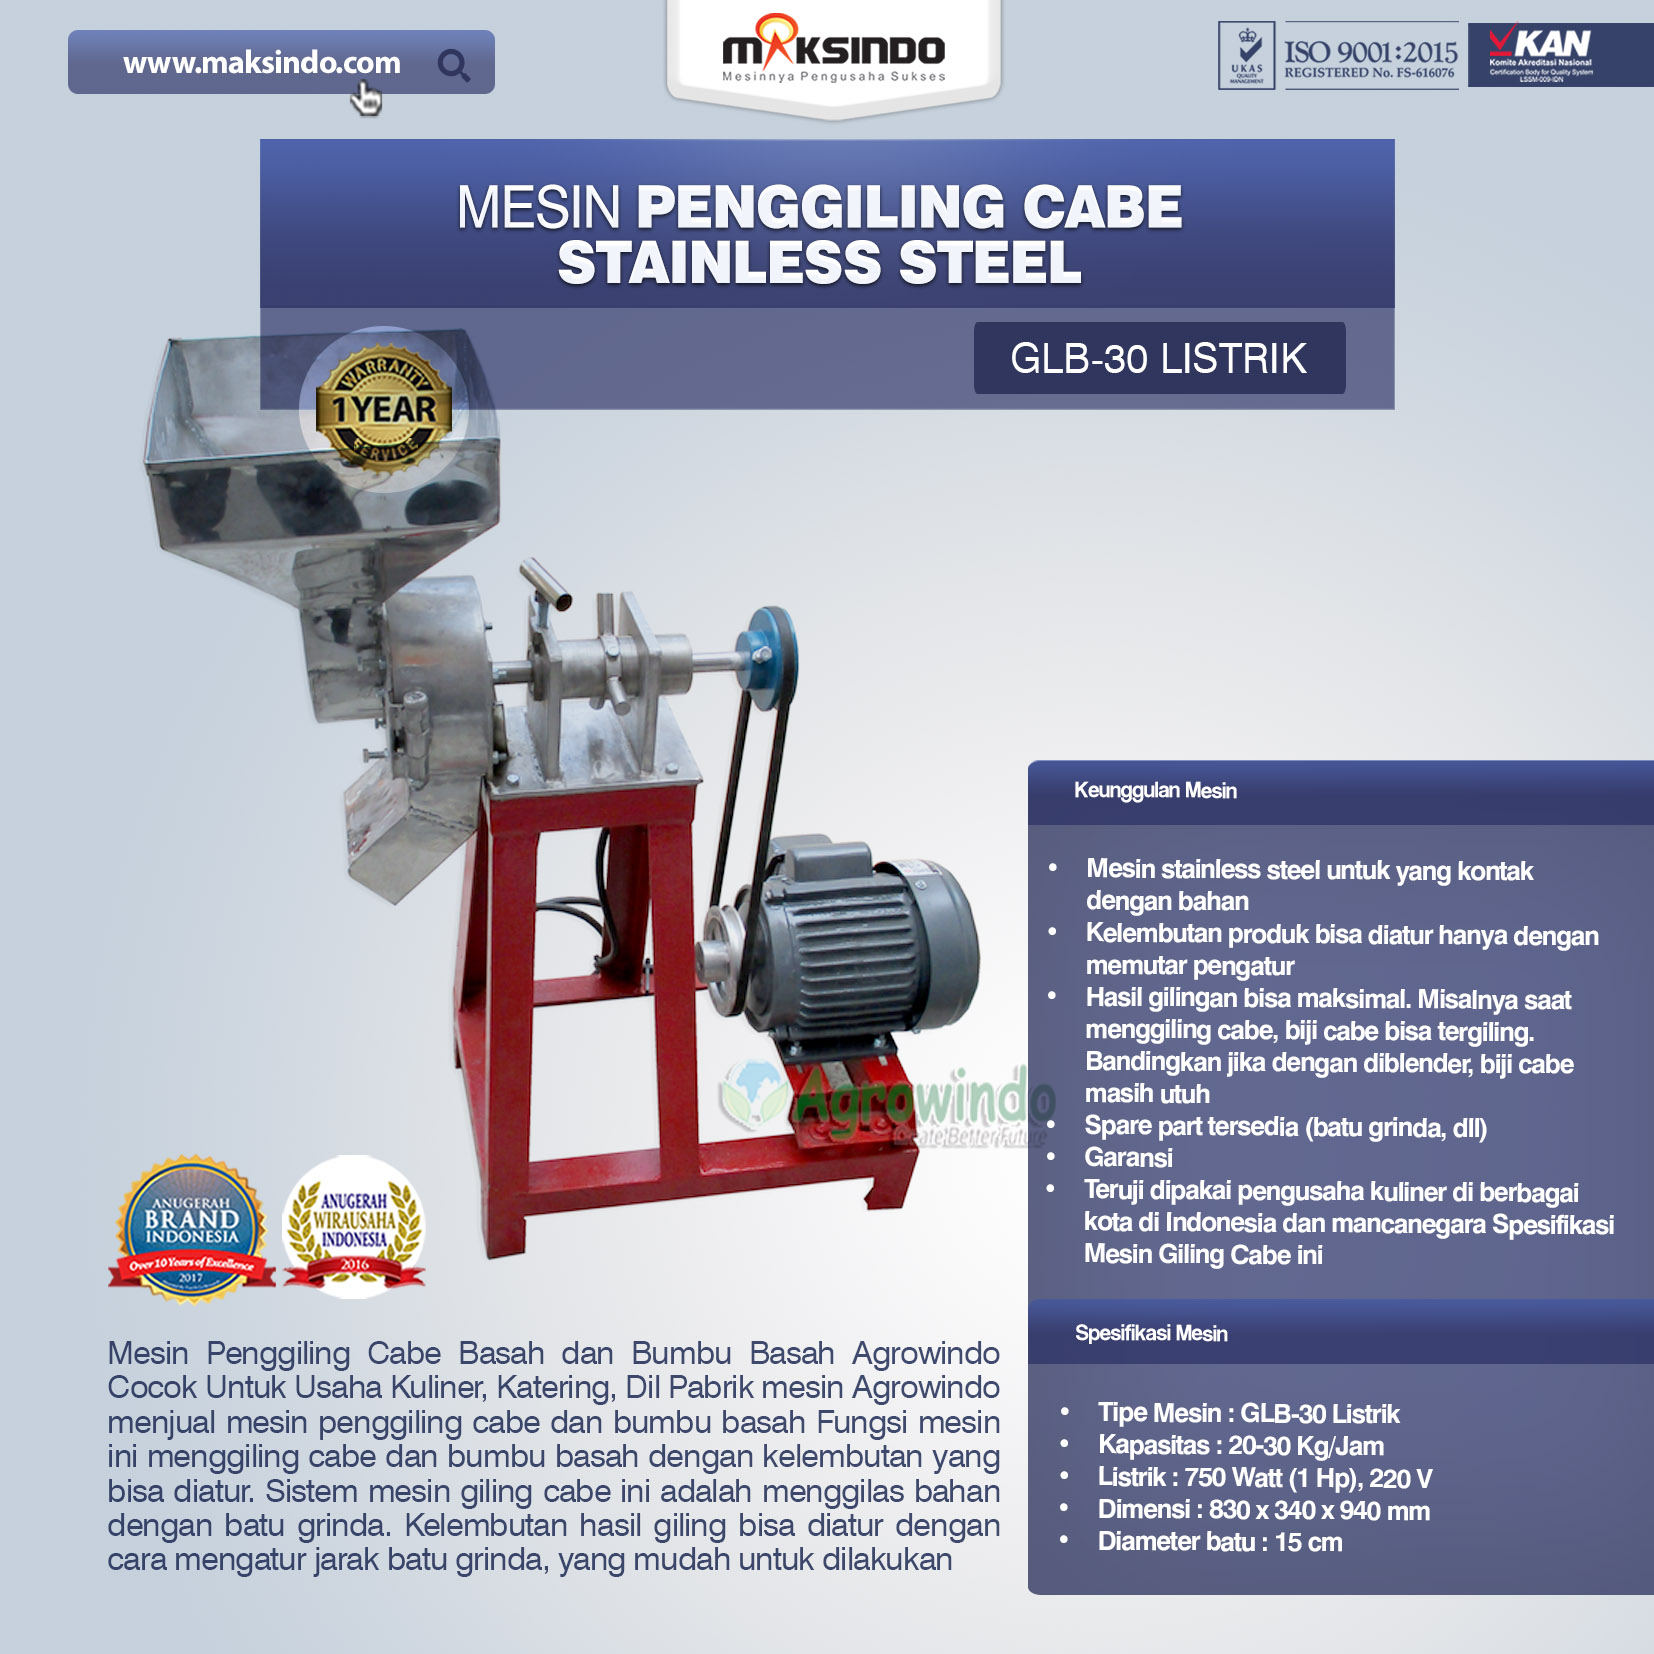 Jual Mesin Penggiling Cabe Stainless Steel di Malang